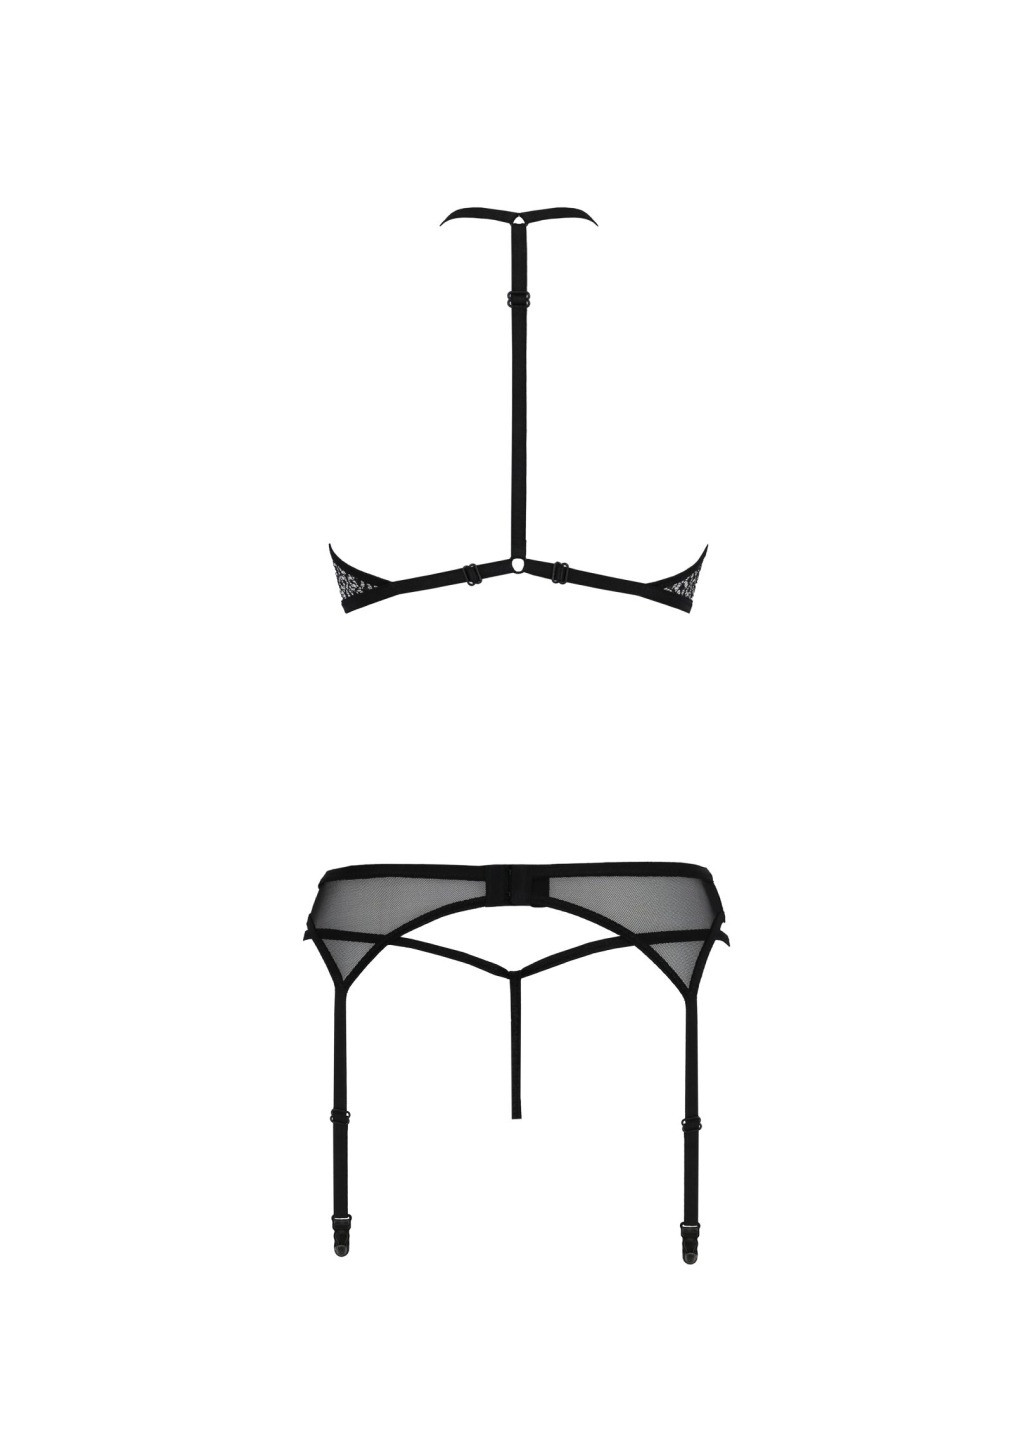 Прозорий демісезонний комплект білизни satara set l/xl black, топ, пояс для панчіх, стрінги Passion